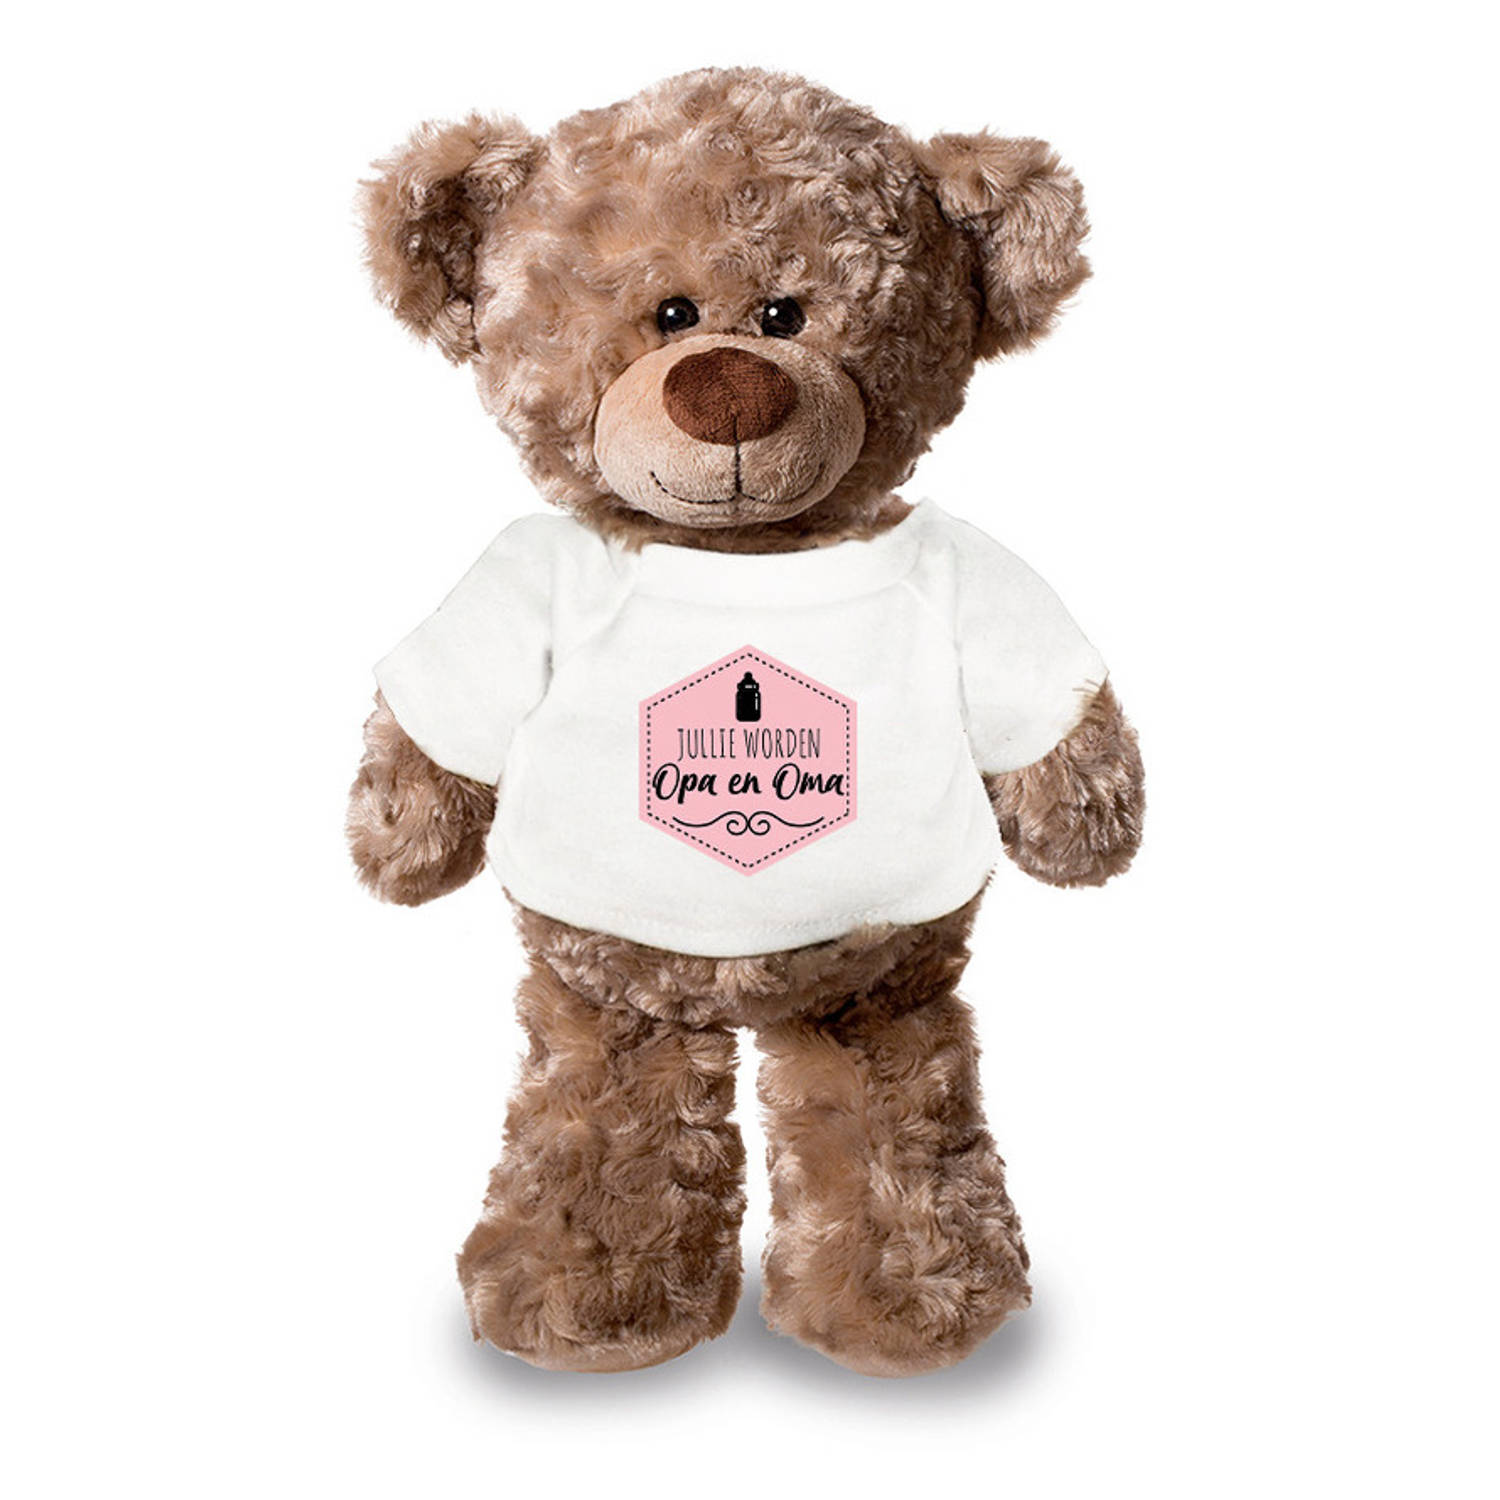 Jullie worden opa en oma aankondiging meisje pluche teddybeer knuffel 24 cm Knuffelberen